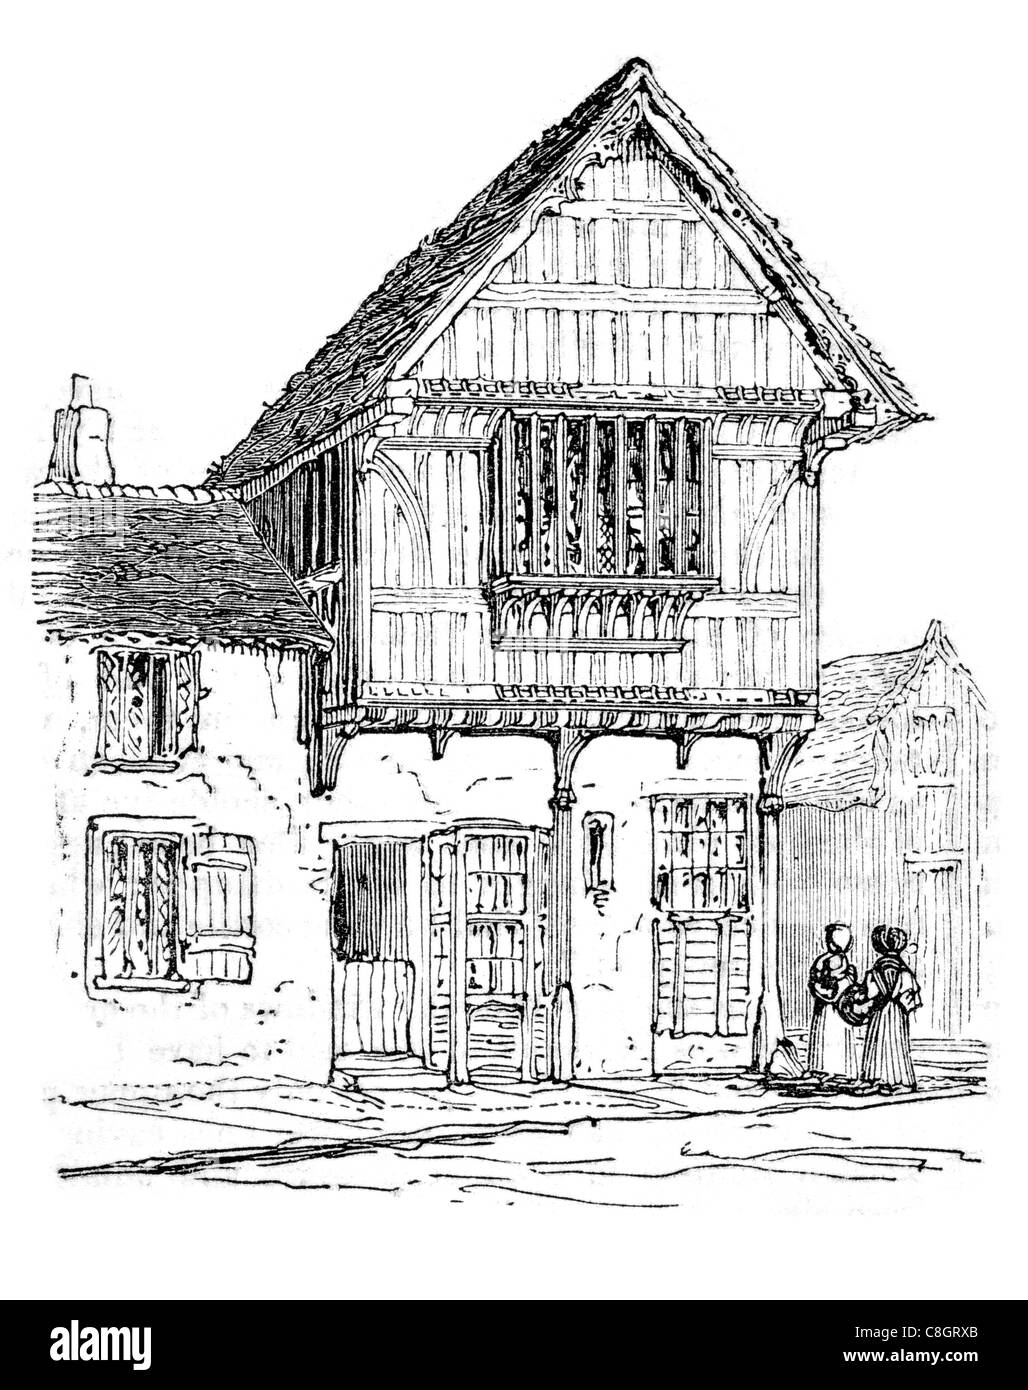 15e siècle à colombages de windows accueil bois chambre daub wattle street tavern pub fenêtre ancienne porte vitrée en verre Banque D'Images